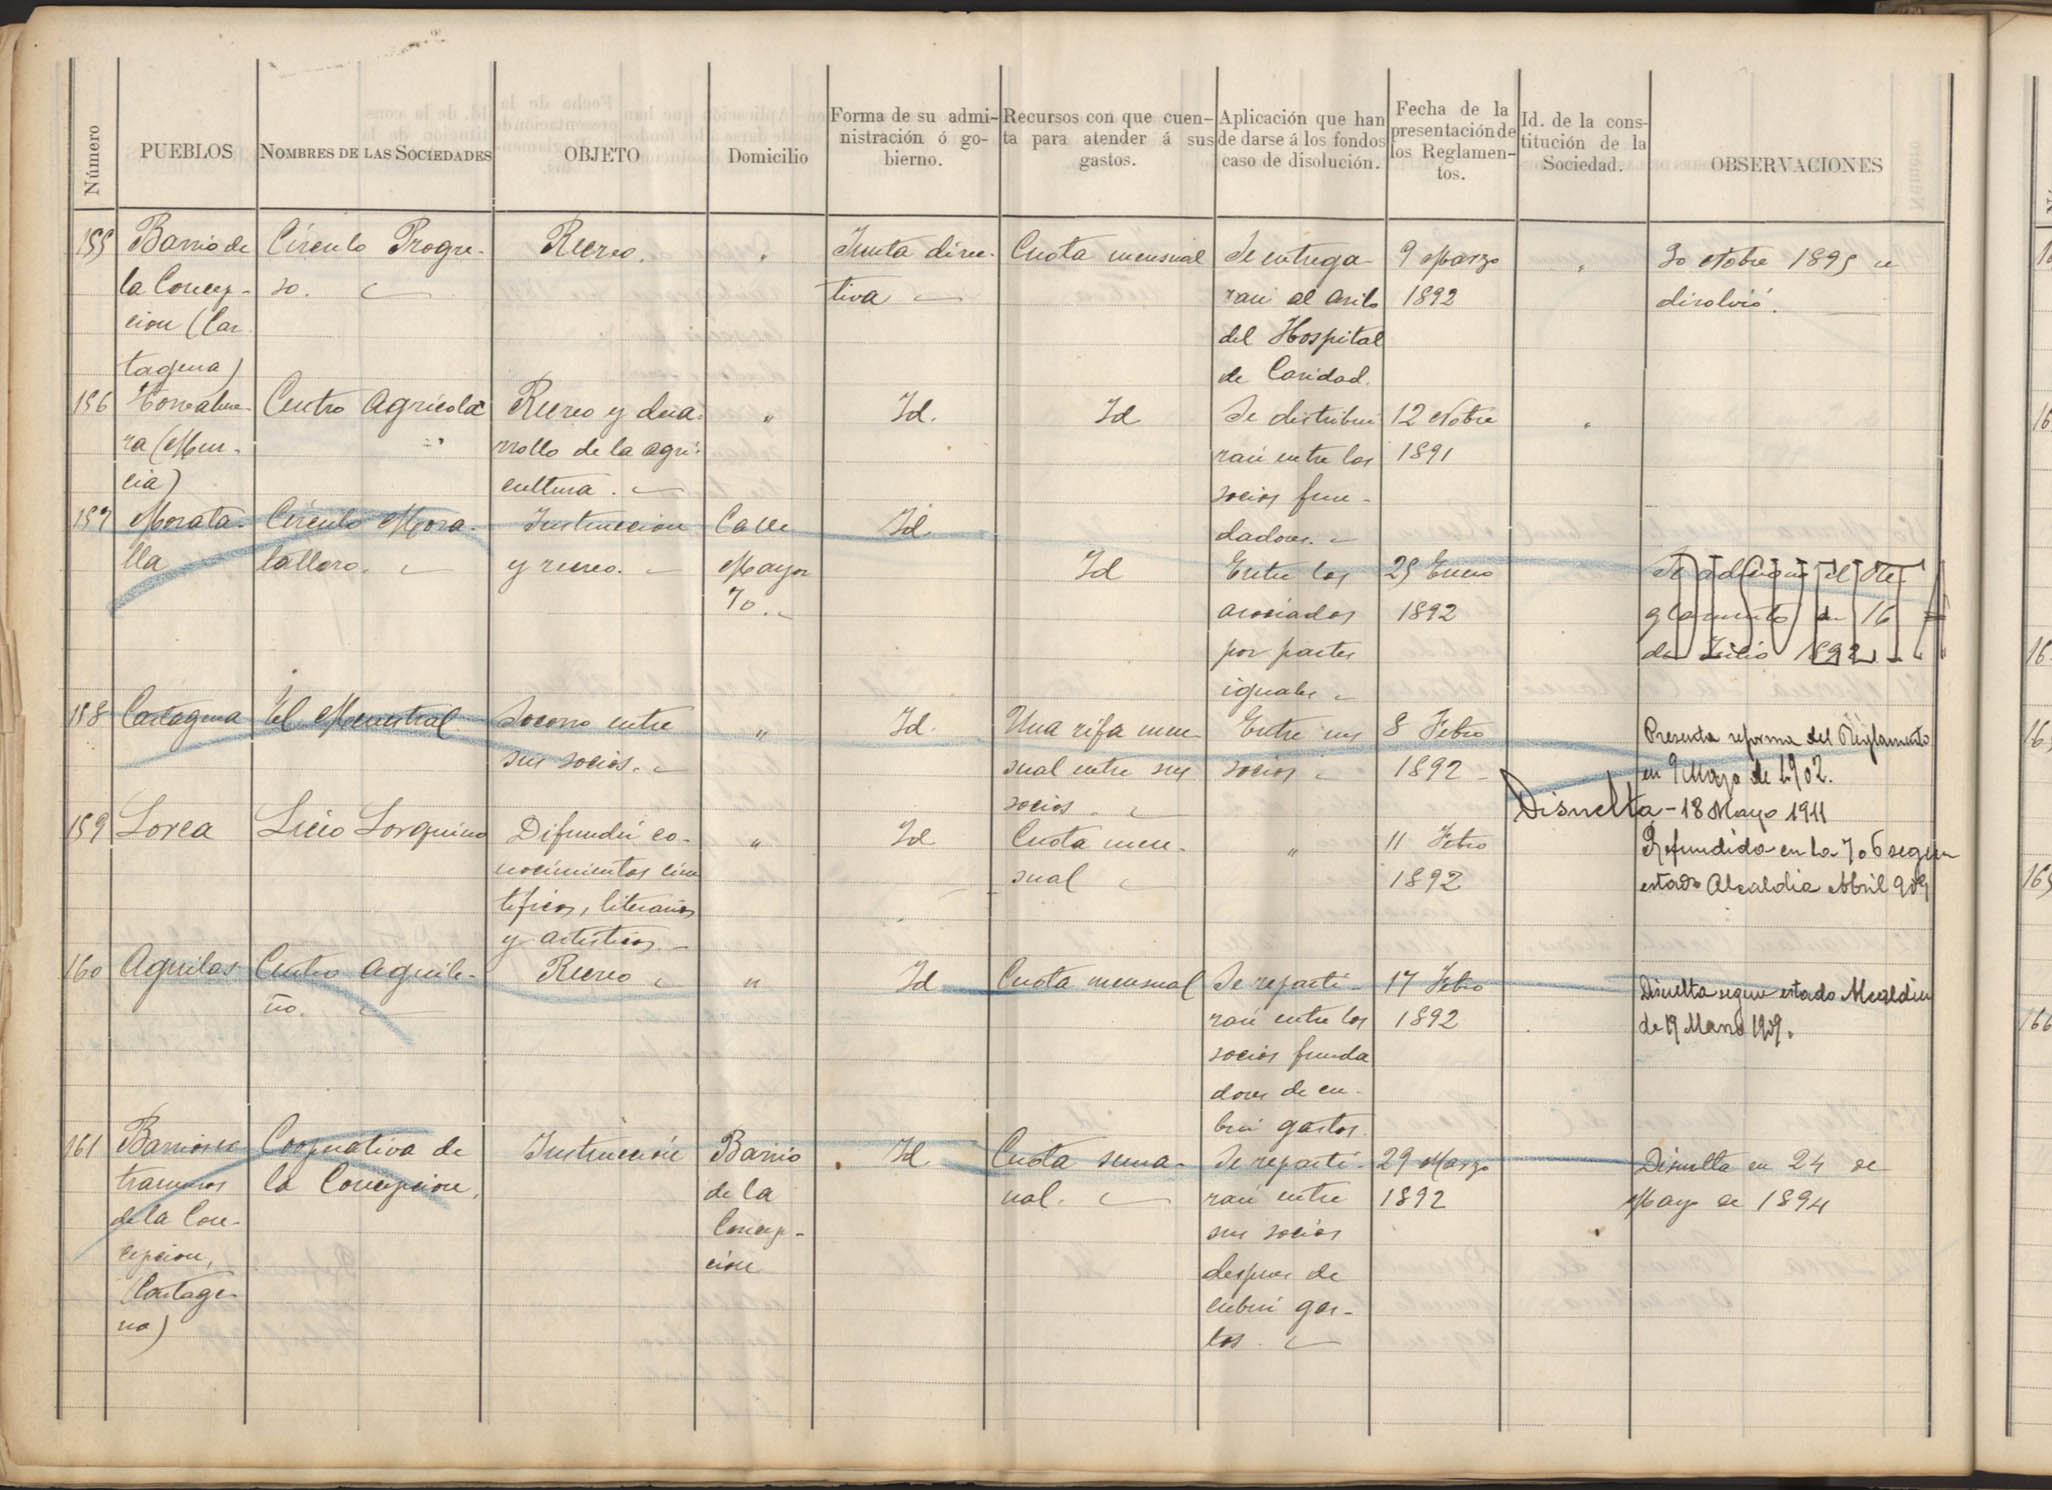 Registro de Asociaciones: nº 151-200. Años 1891-1893.